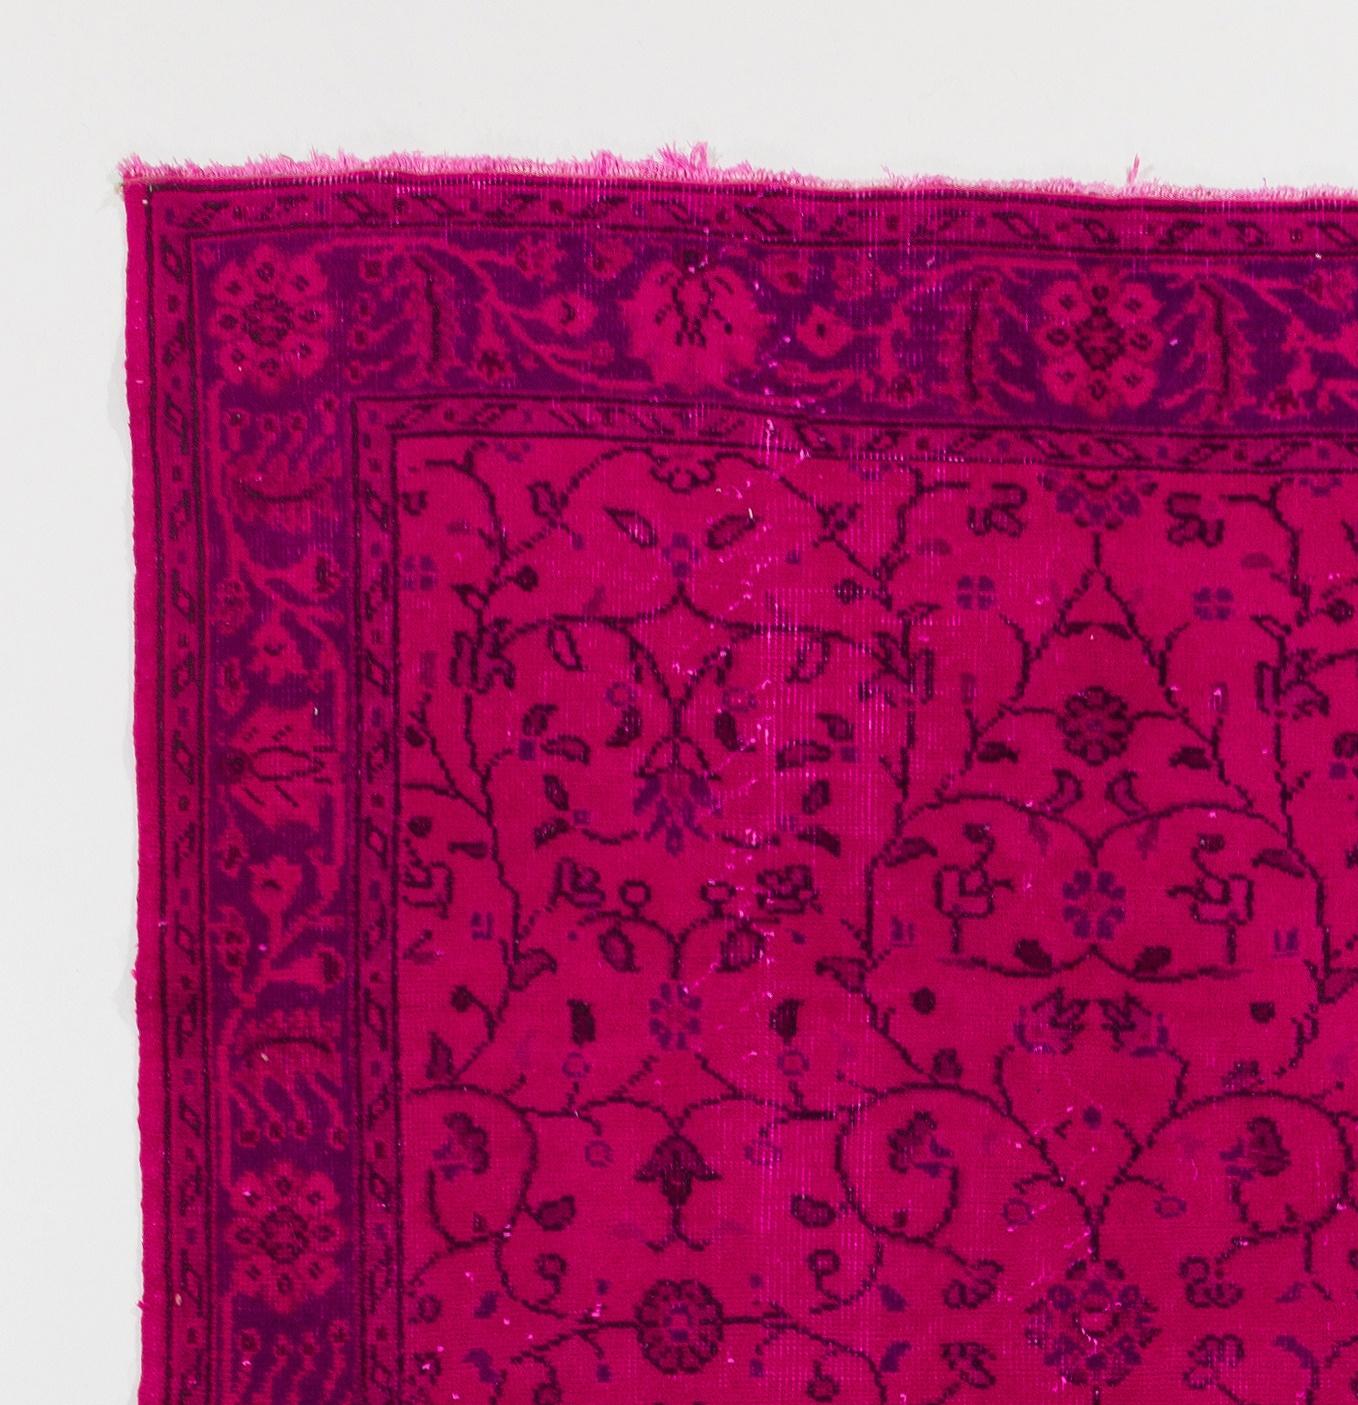 Modern 5x13 Ft Handmade Vintage Floral Pattern Runner Rug in Hot Pink for Hallway Decor For Sale